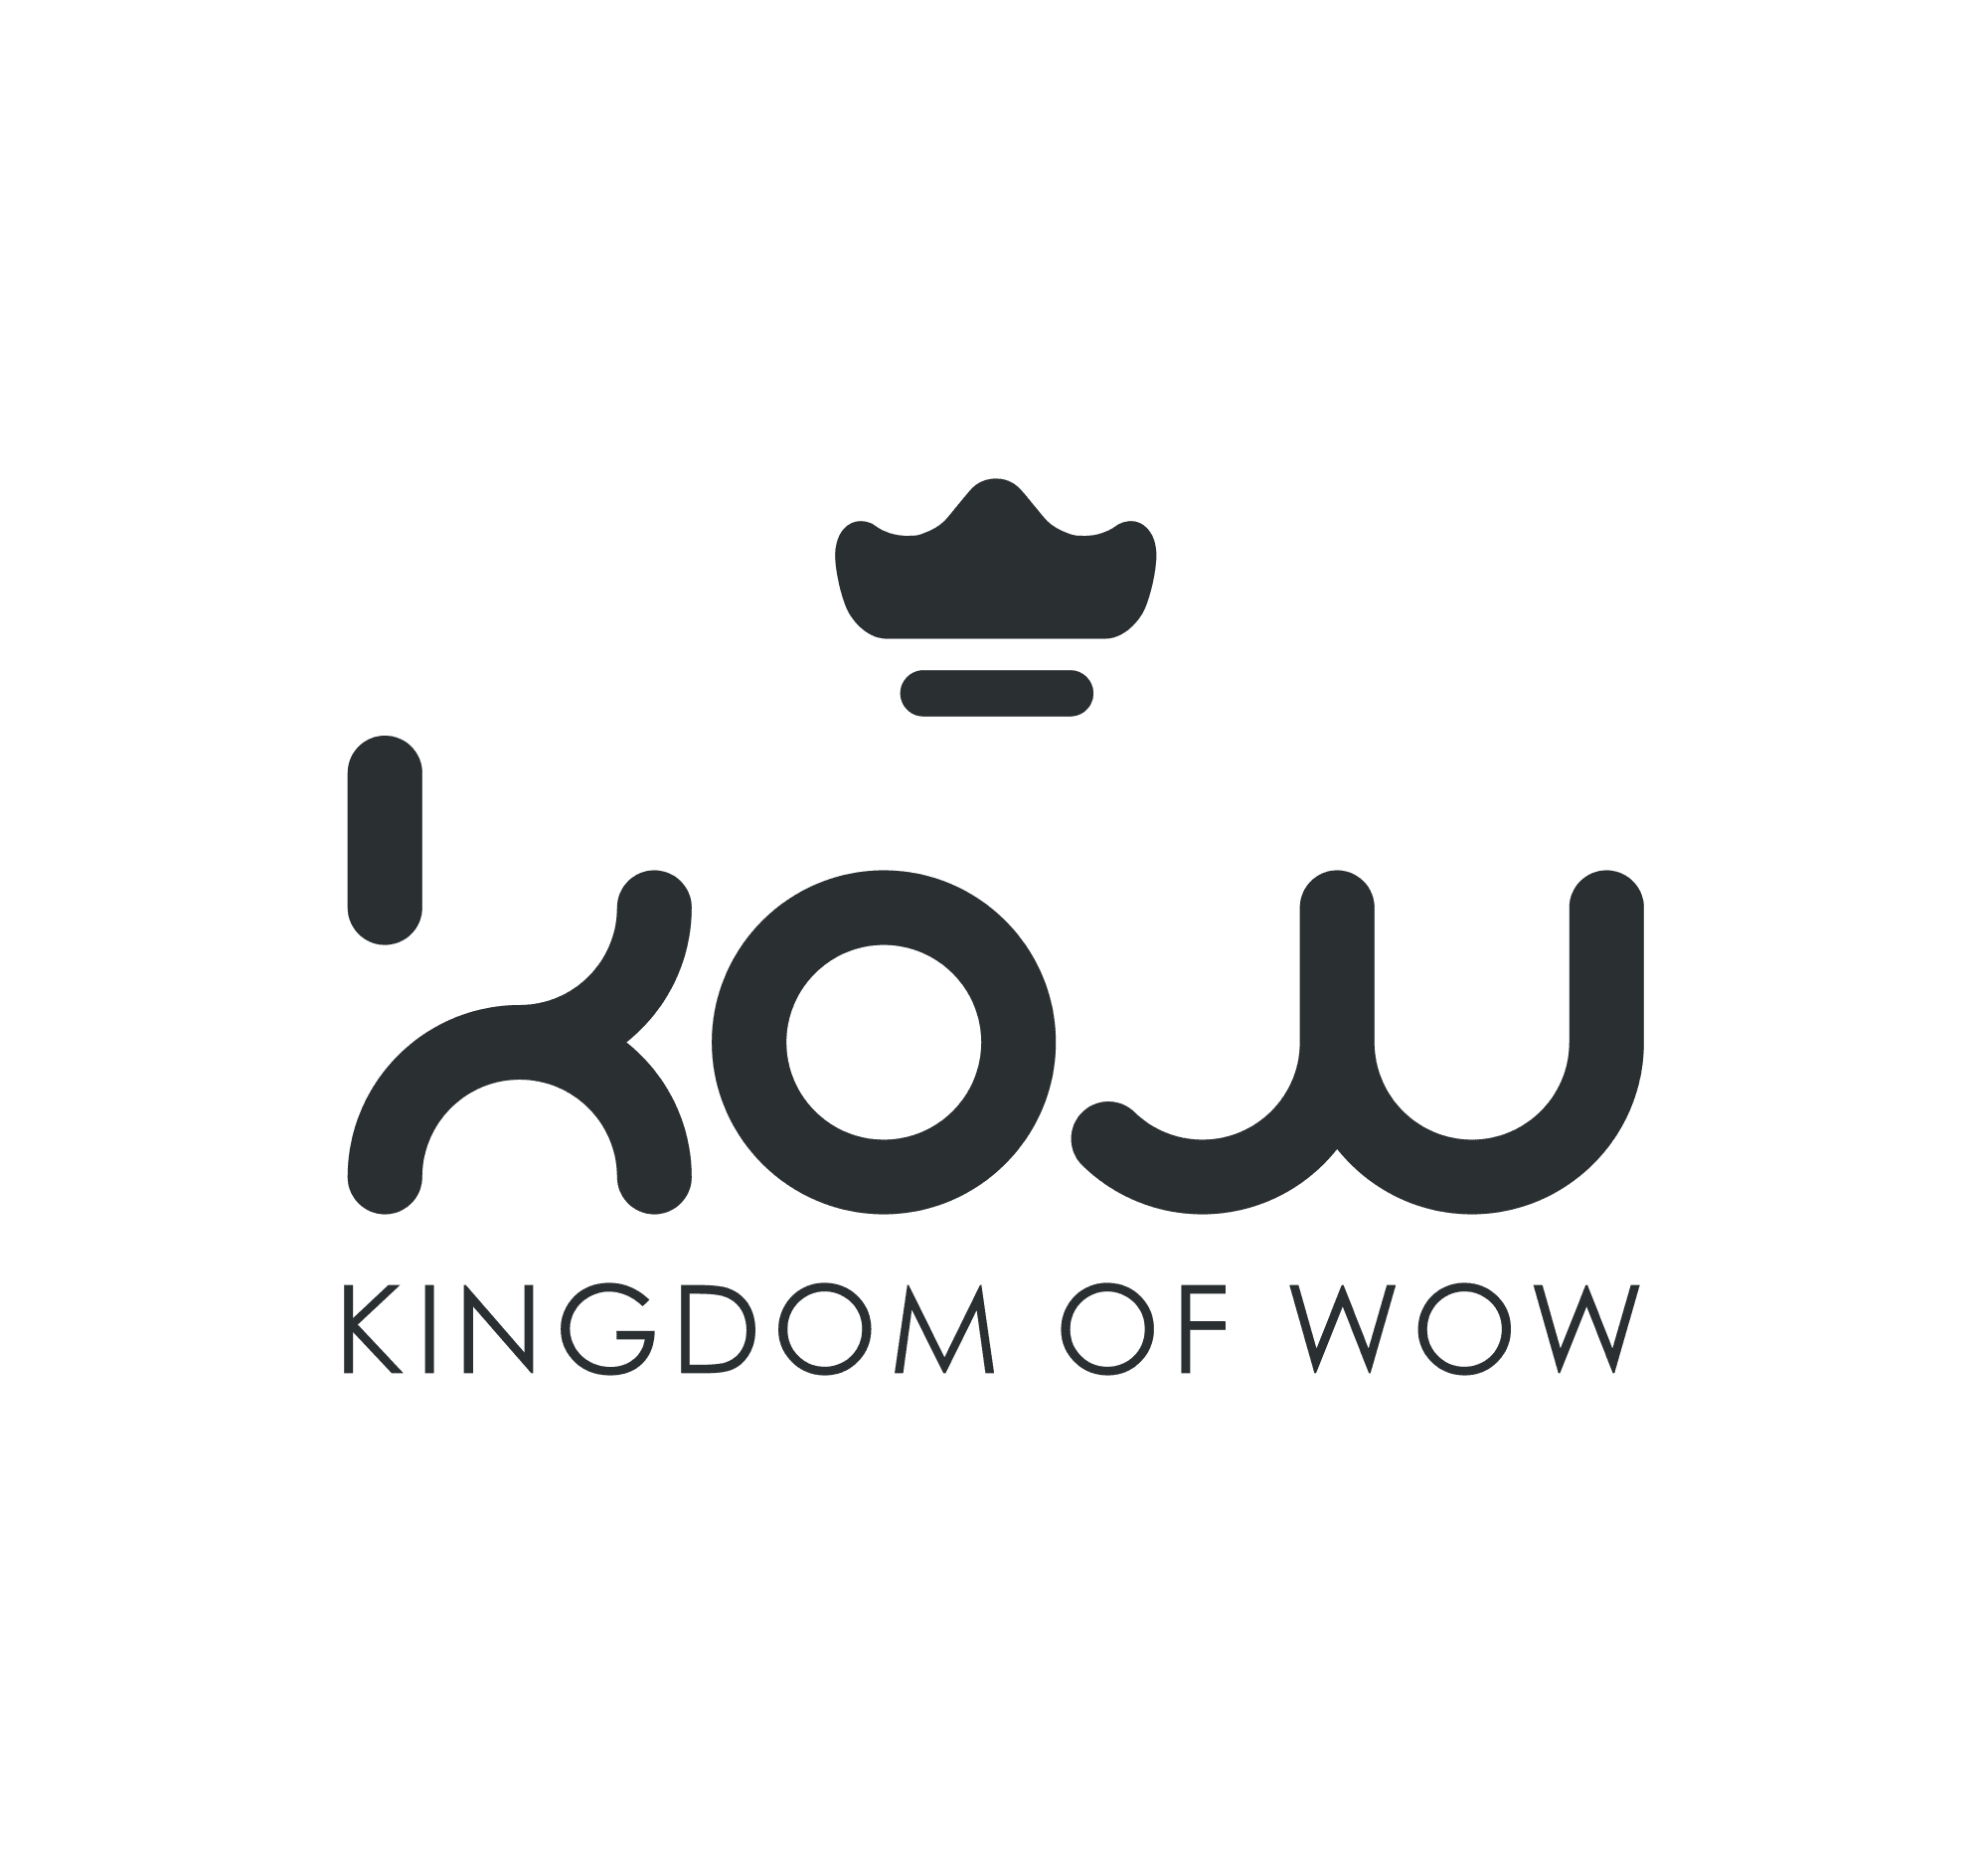 Kingdom of Wow